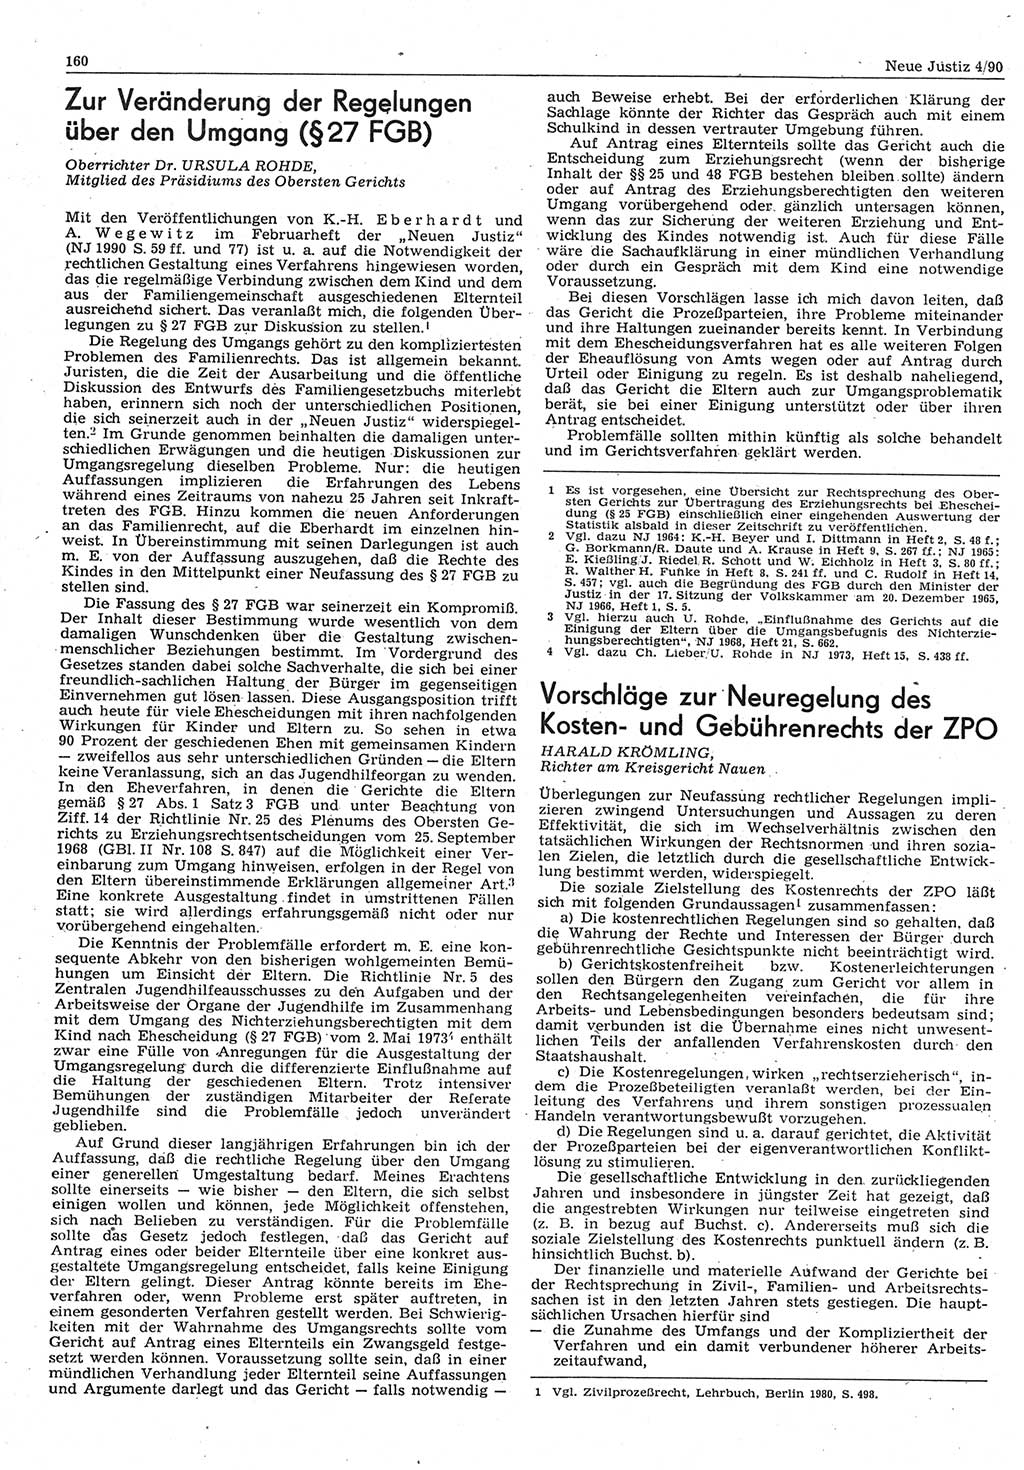 Neue Justiz (NJ), Zeitschrift für Rechtsetzung und Rechtsanwendung [Deutsche Demokratische Republik (DDR)], 44. Jahrgang 1990, Seite 160 (NJ DDR 1990, S. 160)